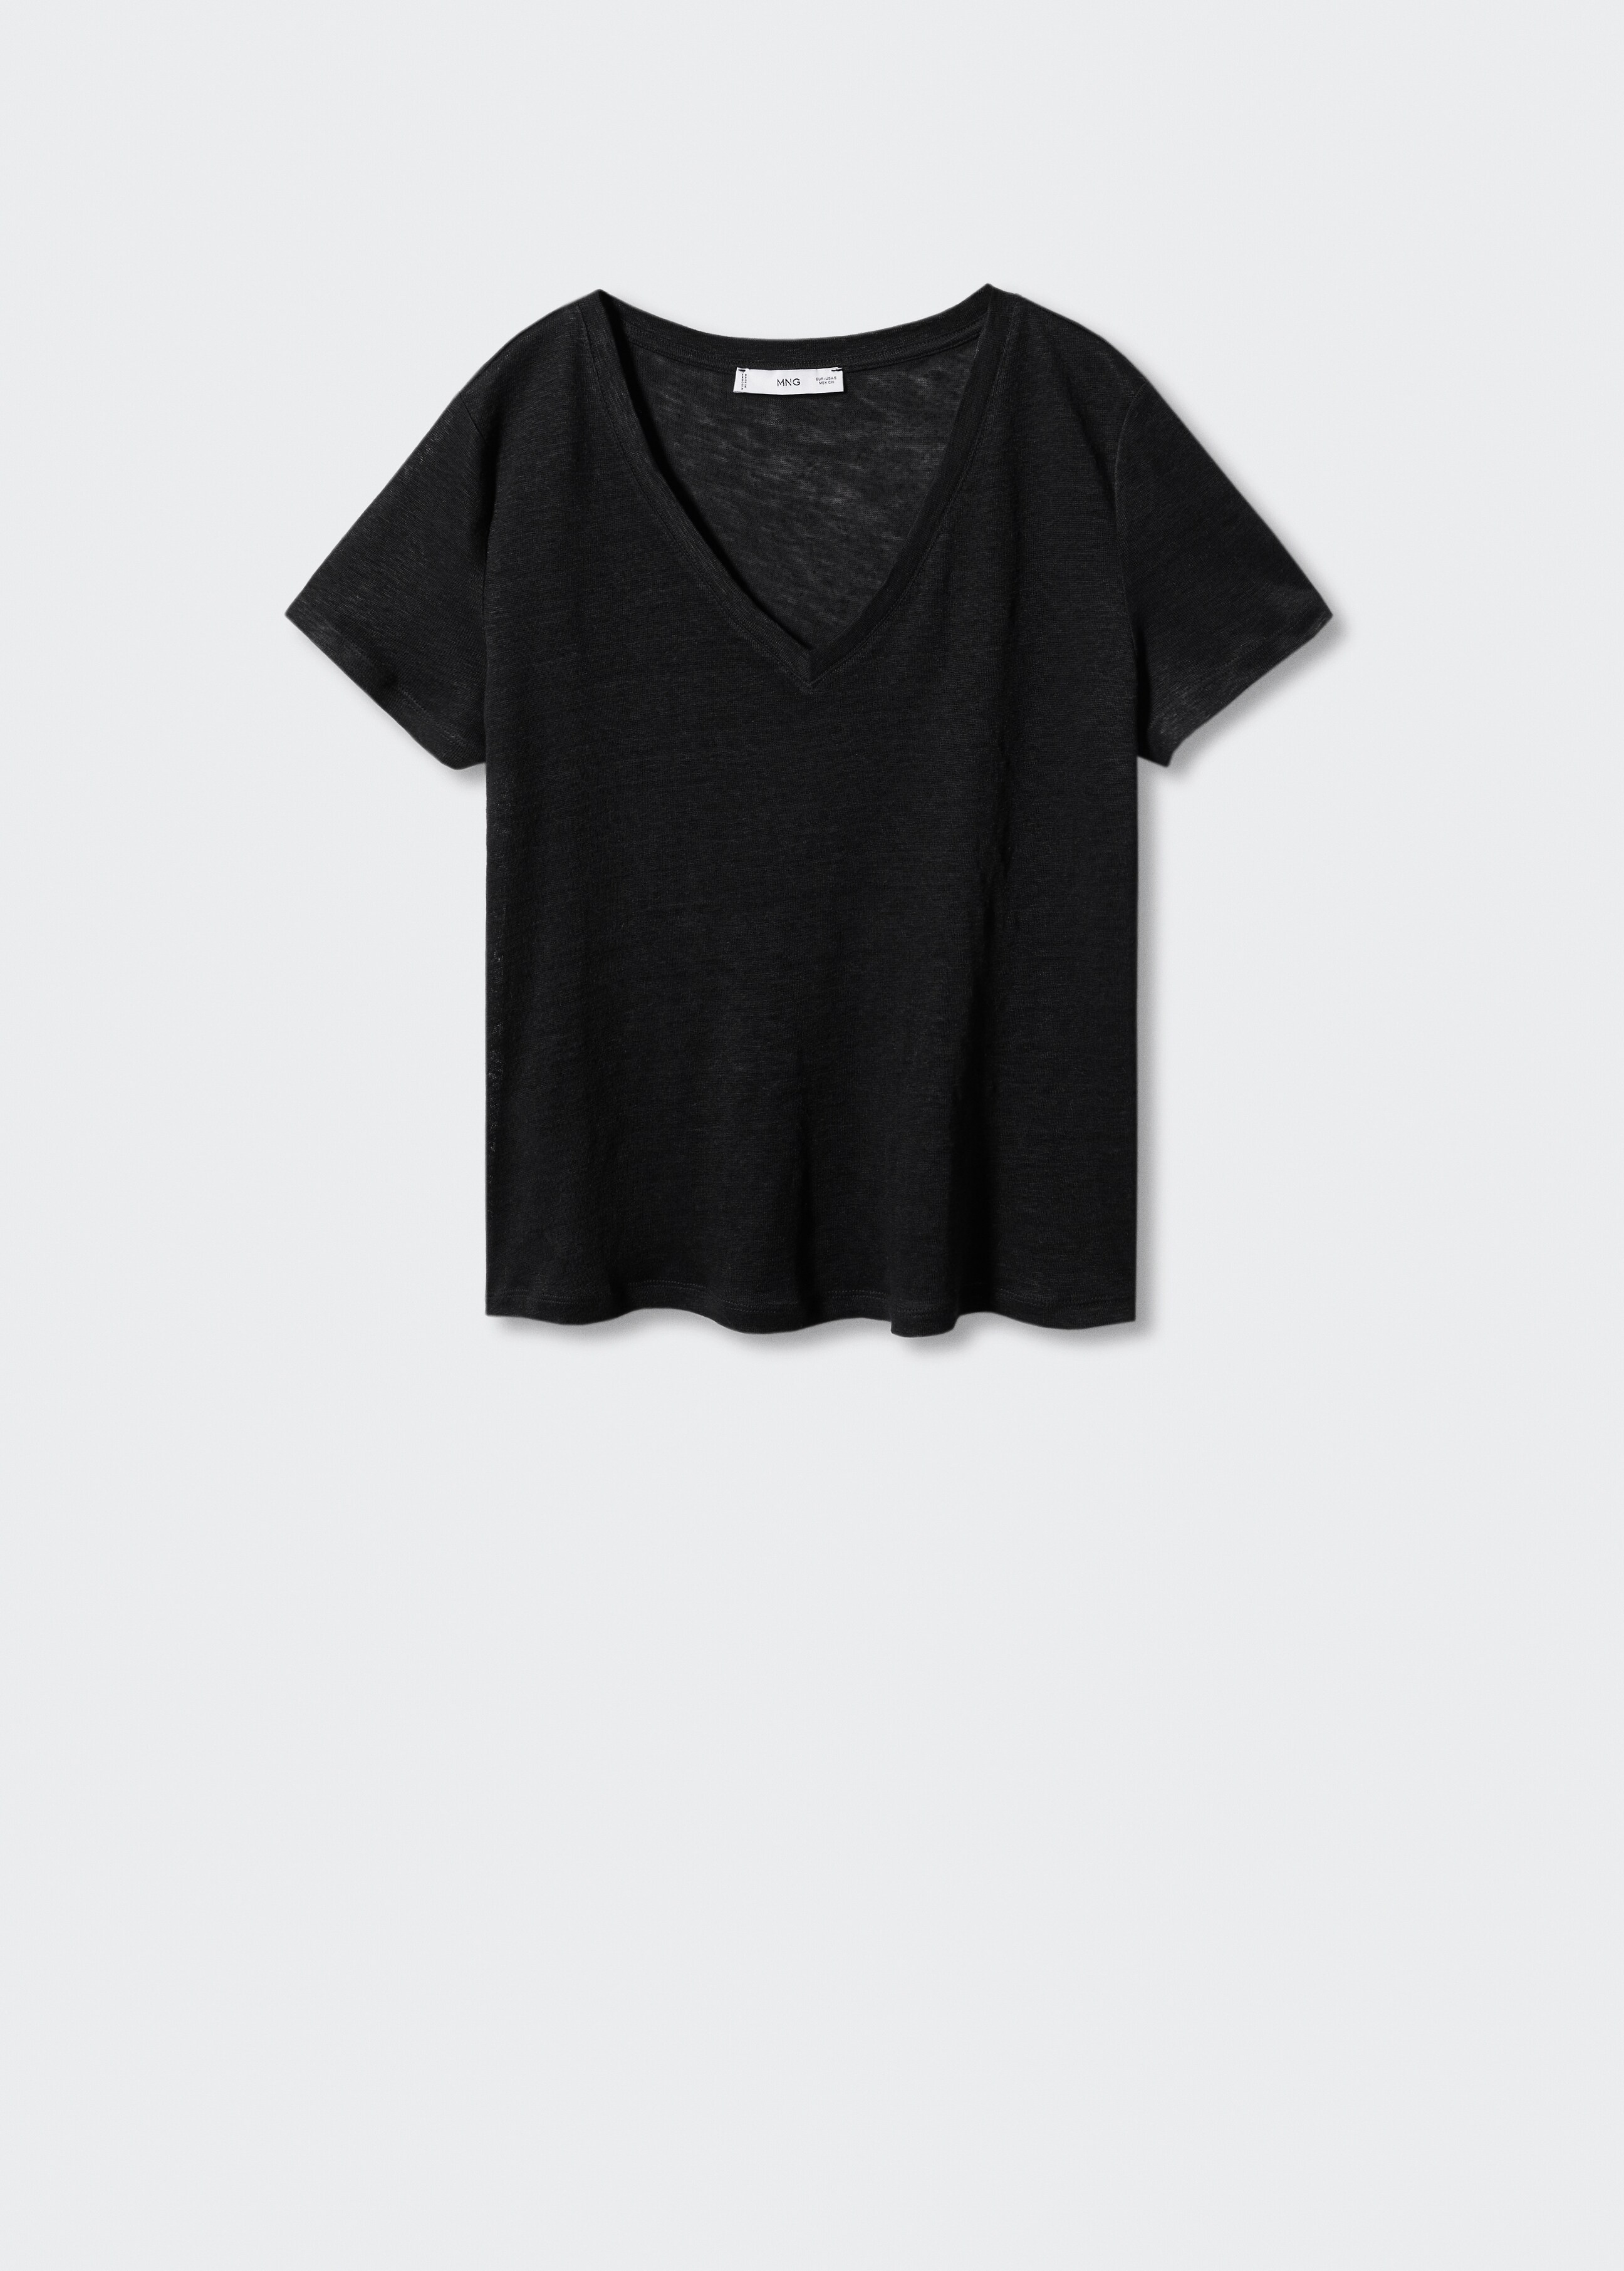 Camiseta lino cuello pico - Artículo sin modelo